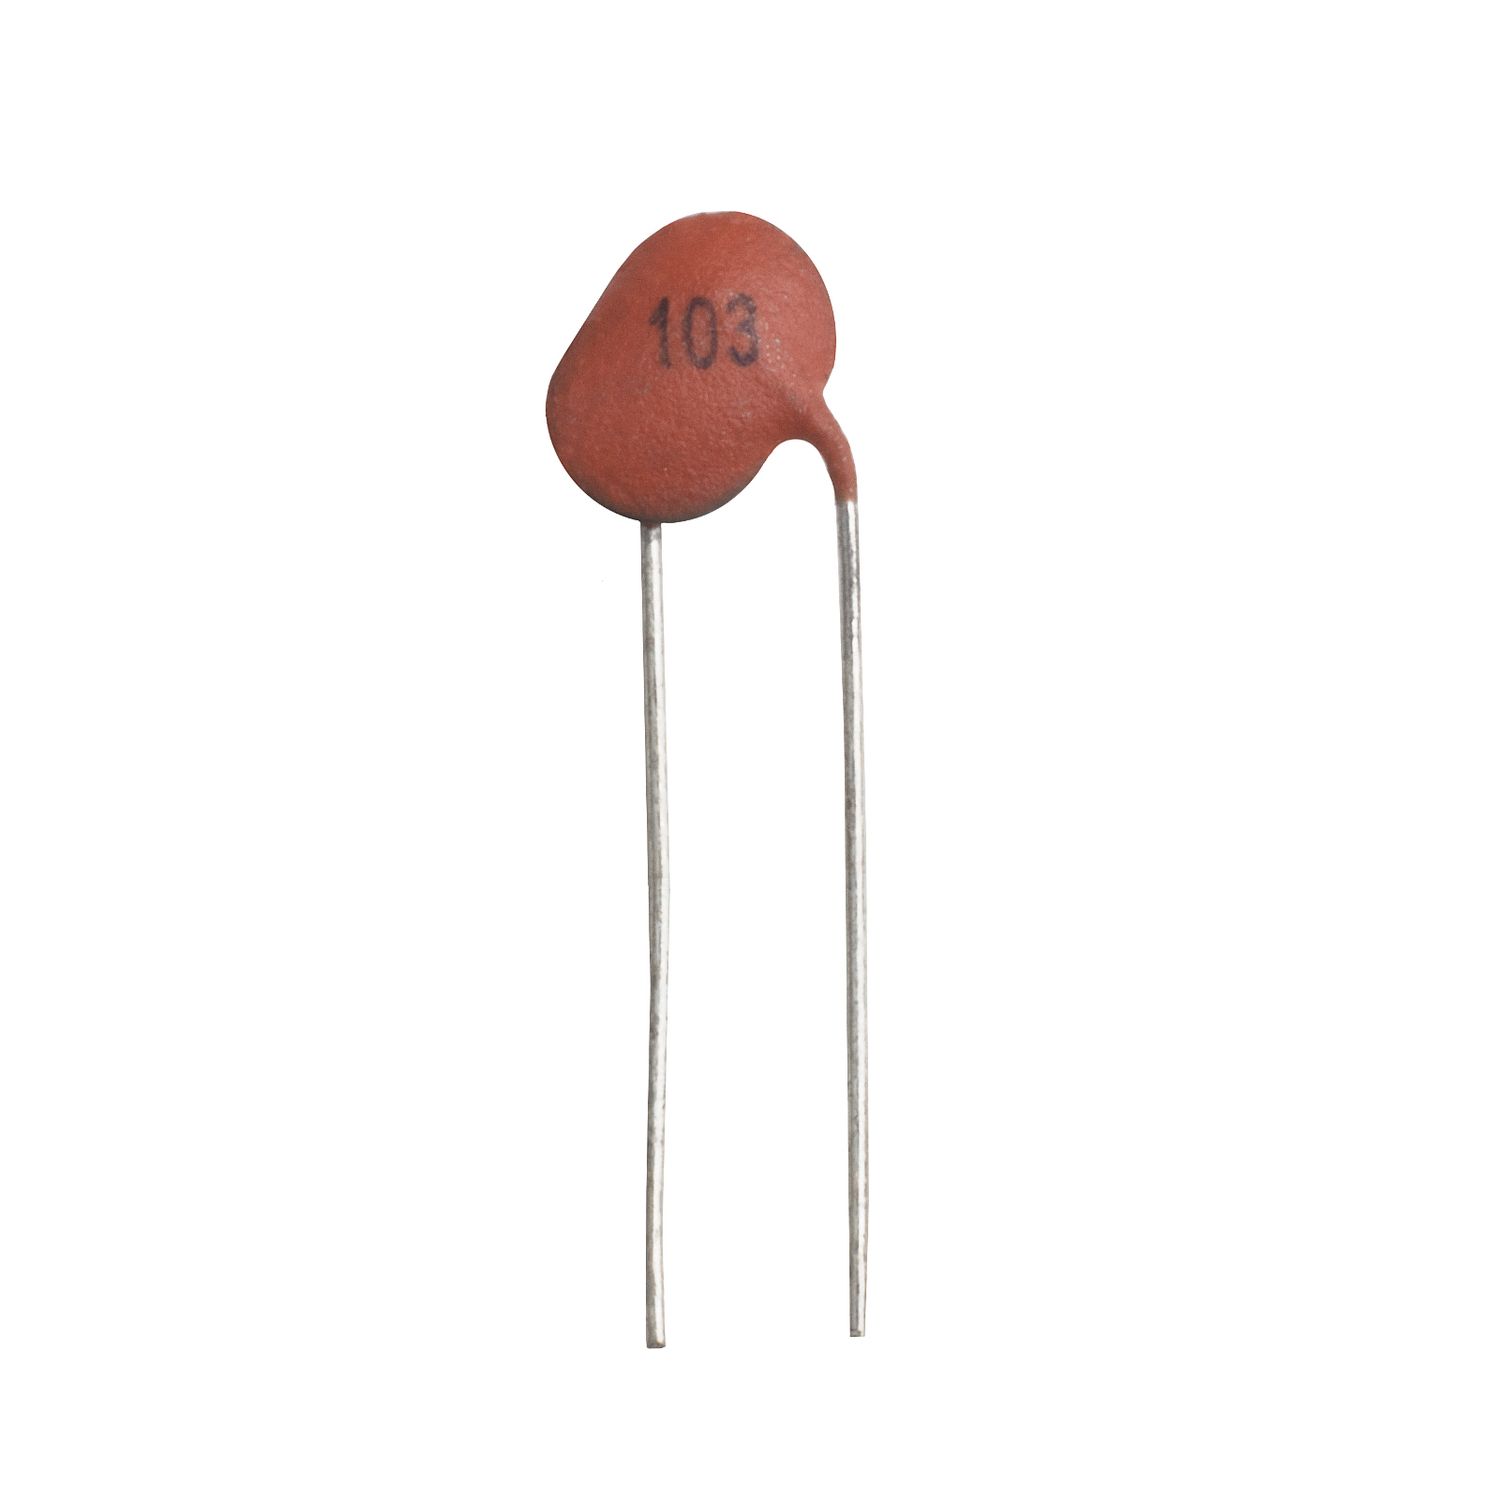 Конденсатор керамический 10 мкФ 50 В (103)